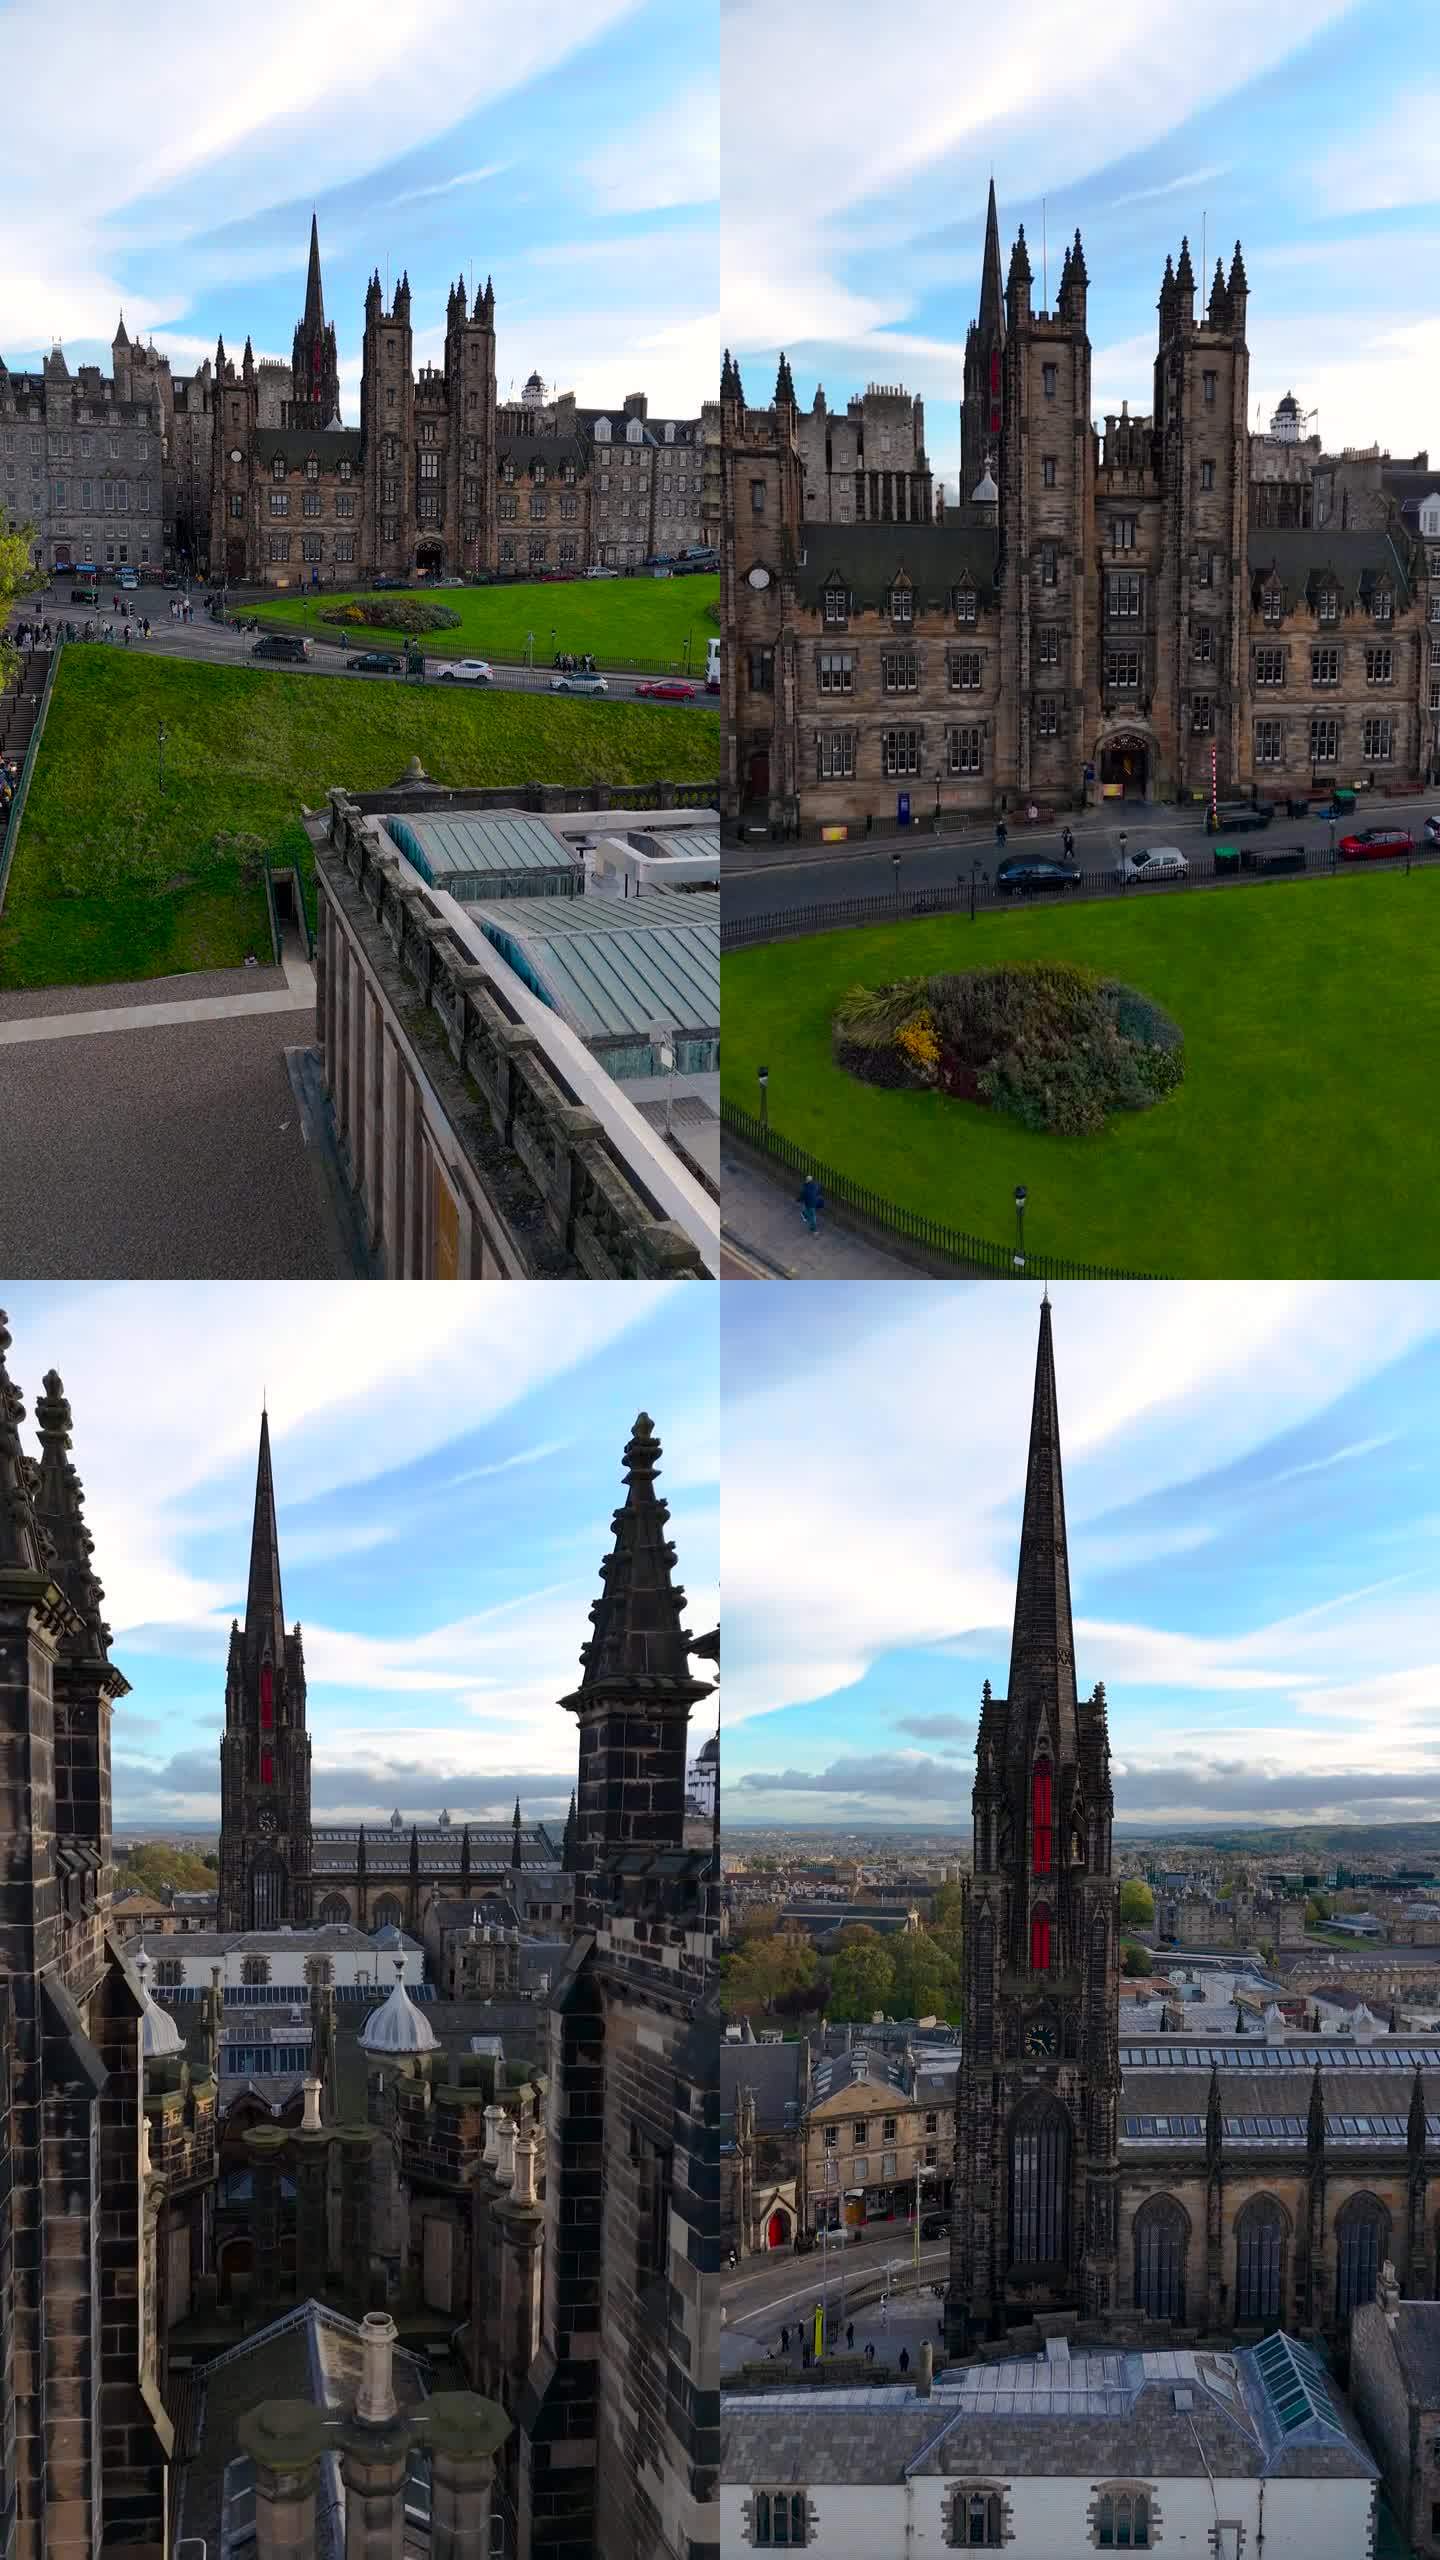 苏格兰国家美术馆和苏格兰皇家学院鸟瞰图，爱丁堡鸟瞰图，爱丁堡市中心美术馆鸟瞰图，爱丁堡老城区鸟瞰图，